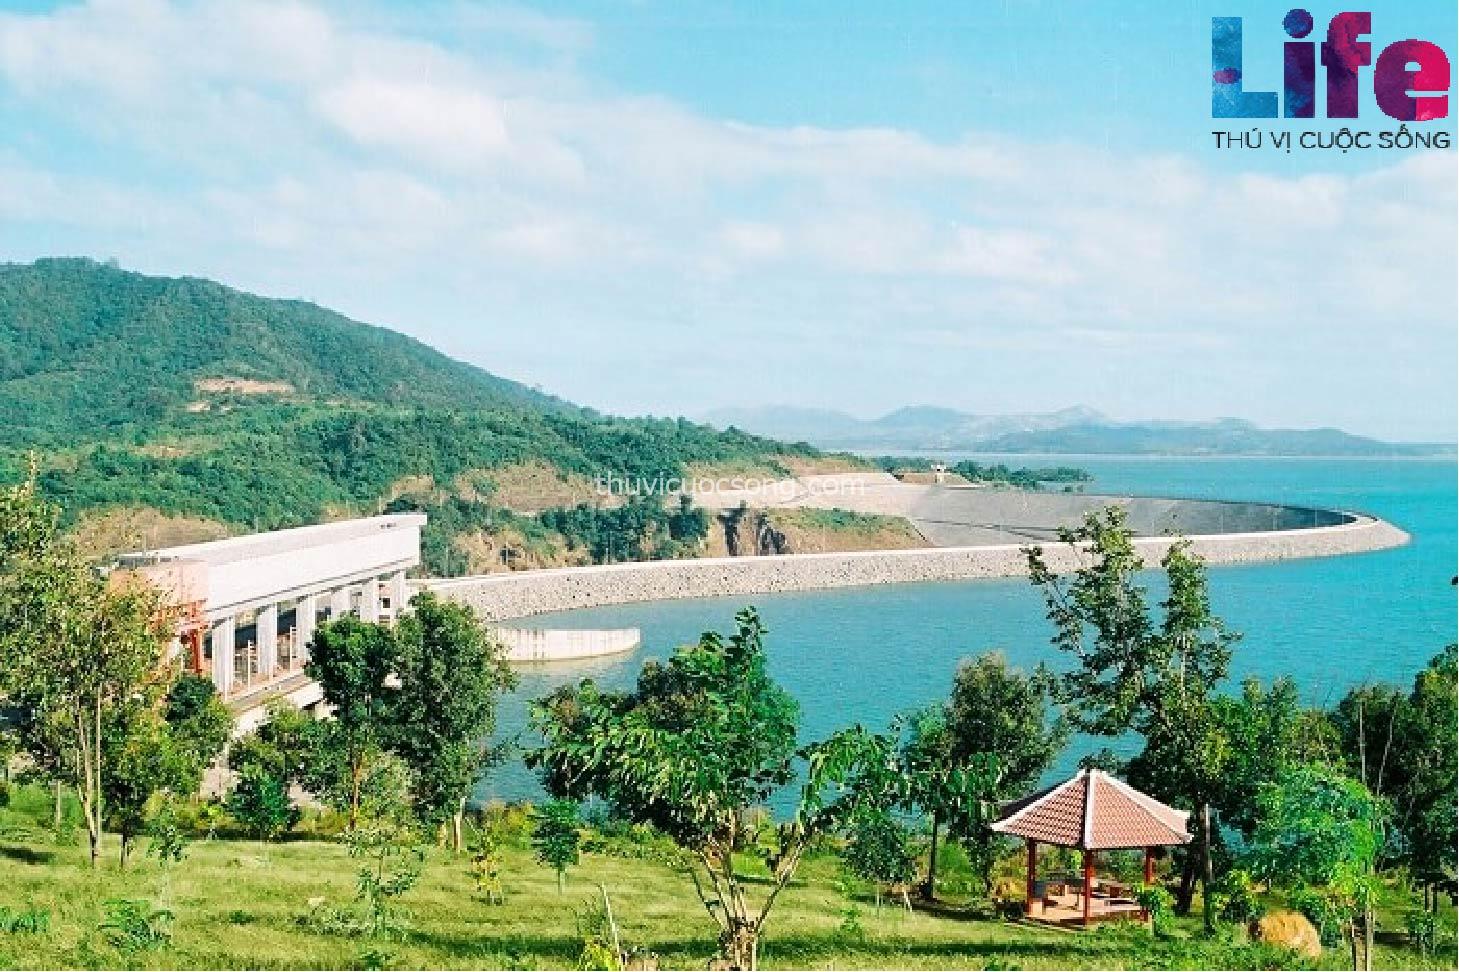 Nhà máy thủy điện Ialy - Một địa điểm du lịch Gia lai đặc biệt